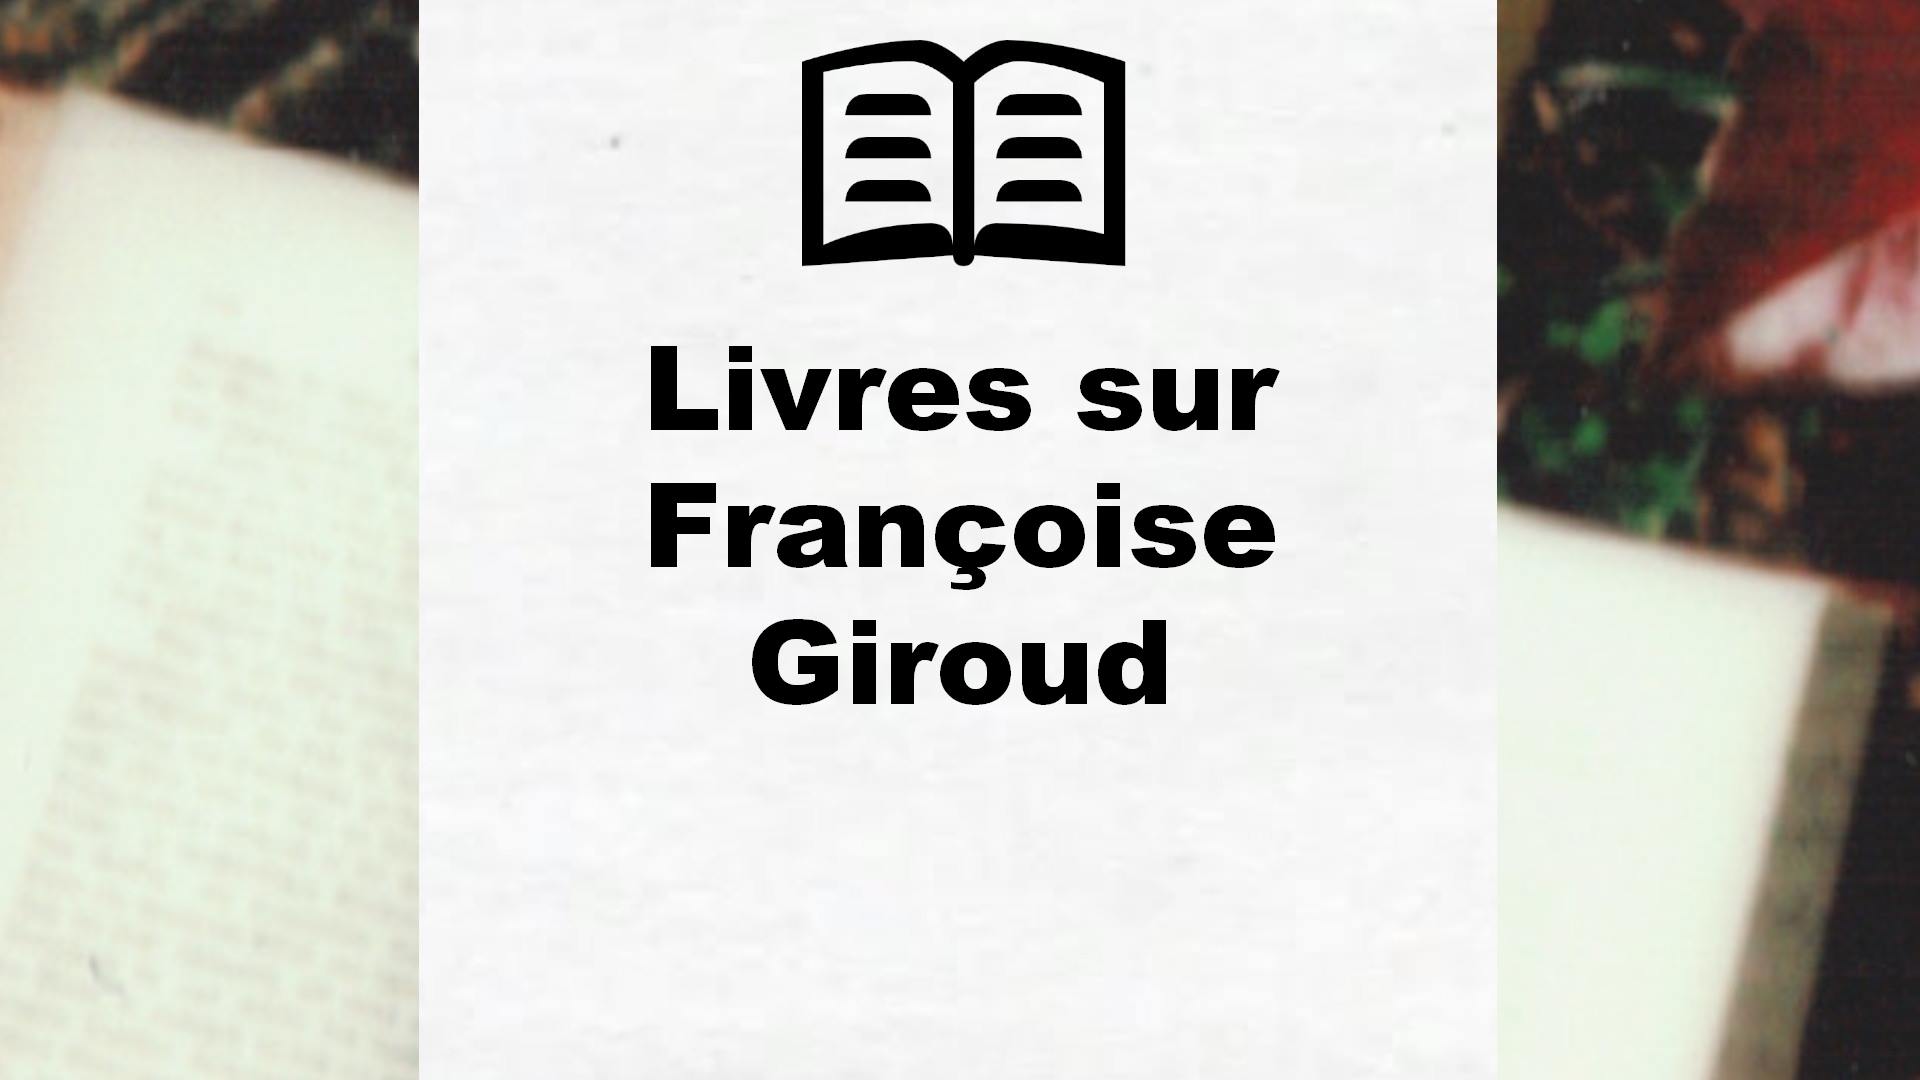 Livres sur Françoise Giroud